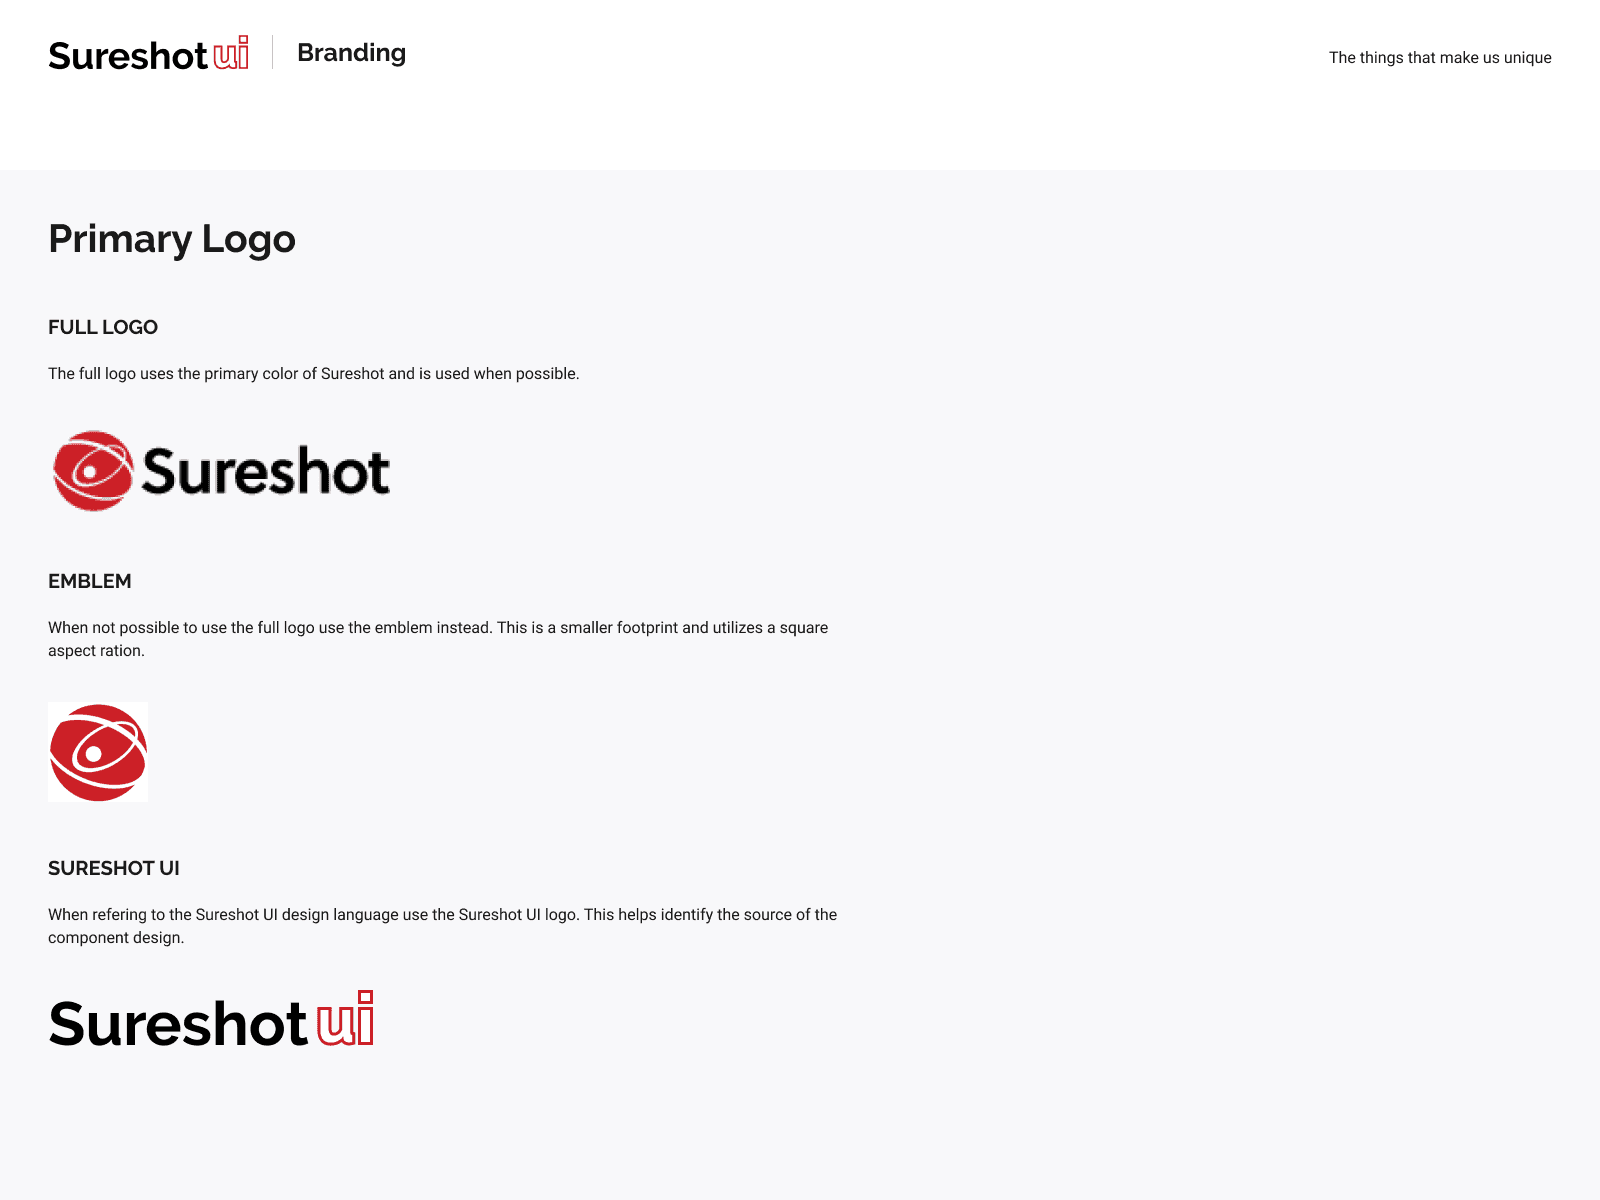 sureshot logo brand